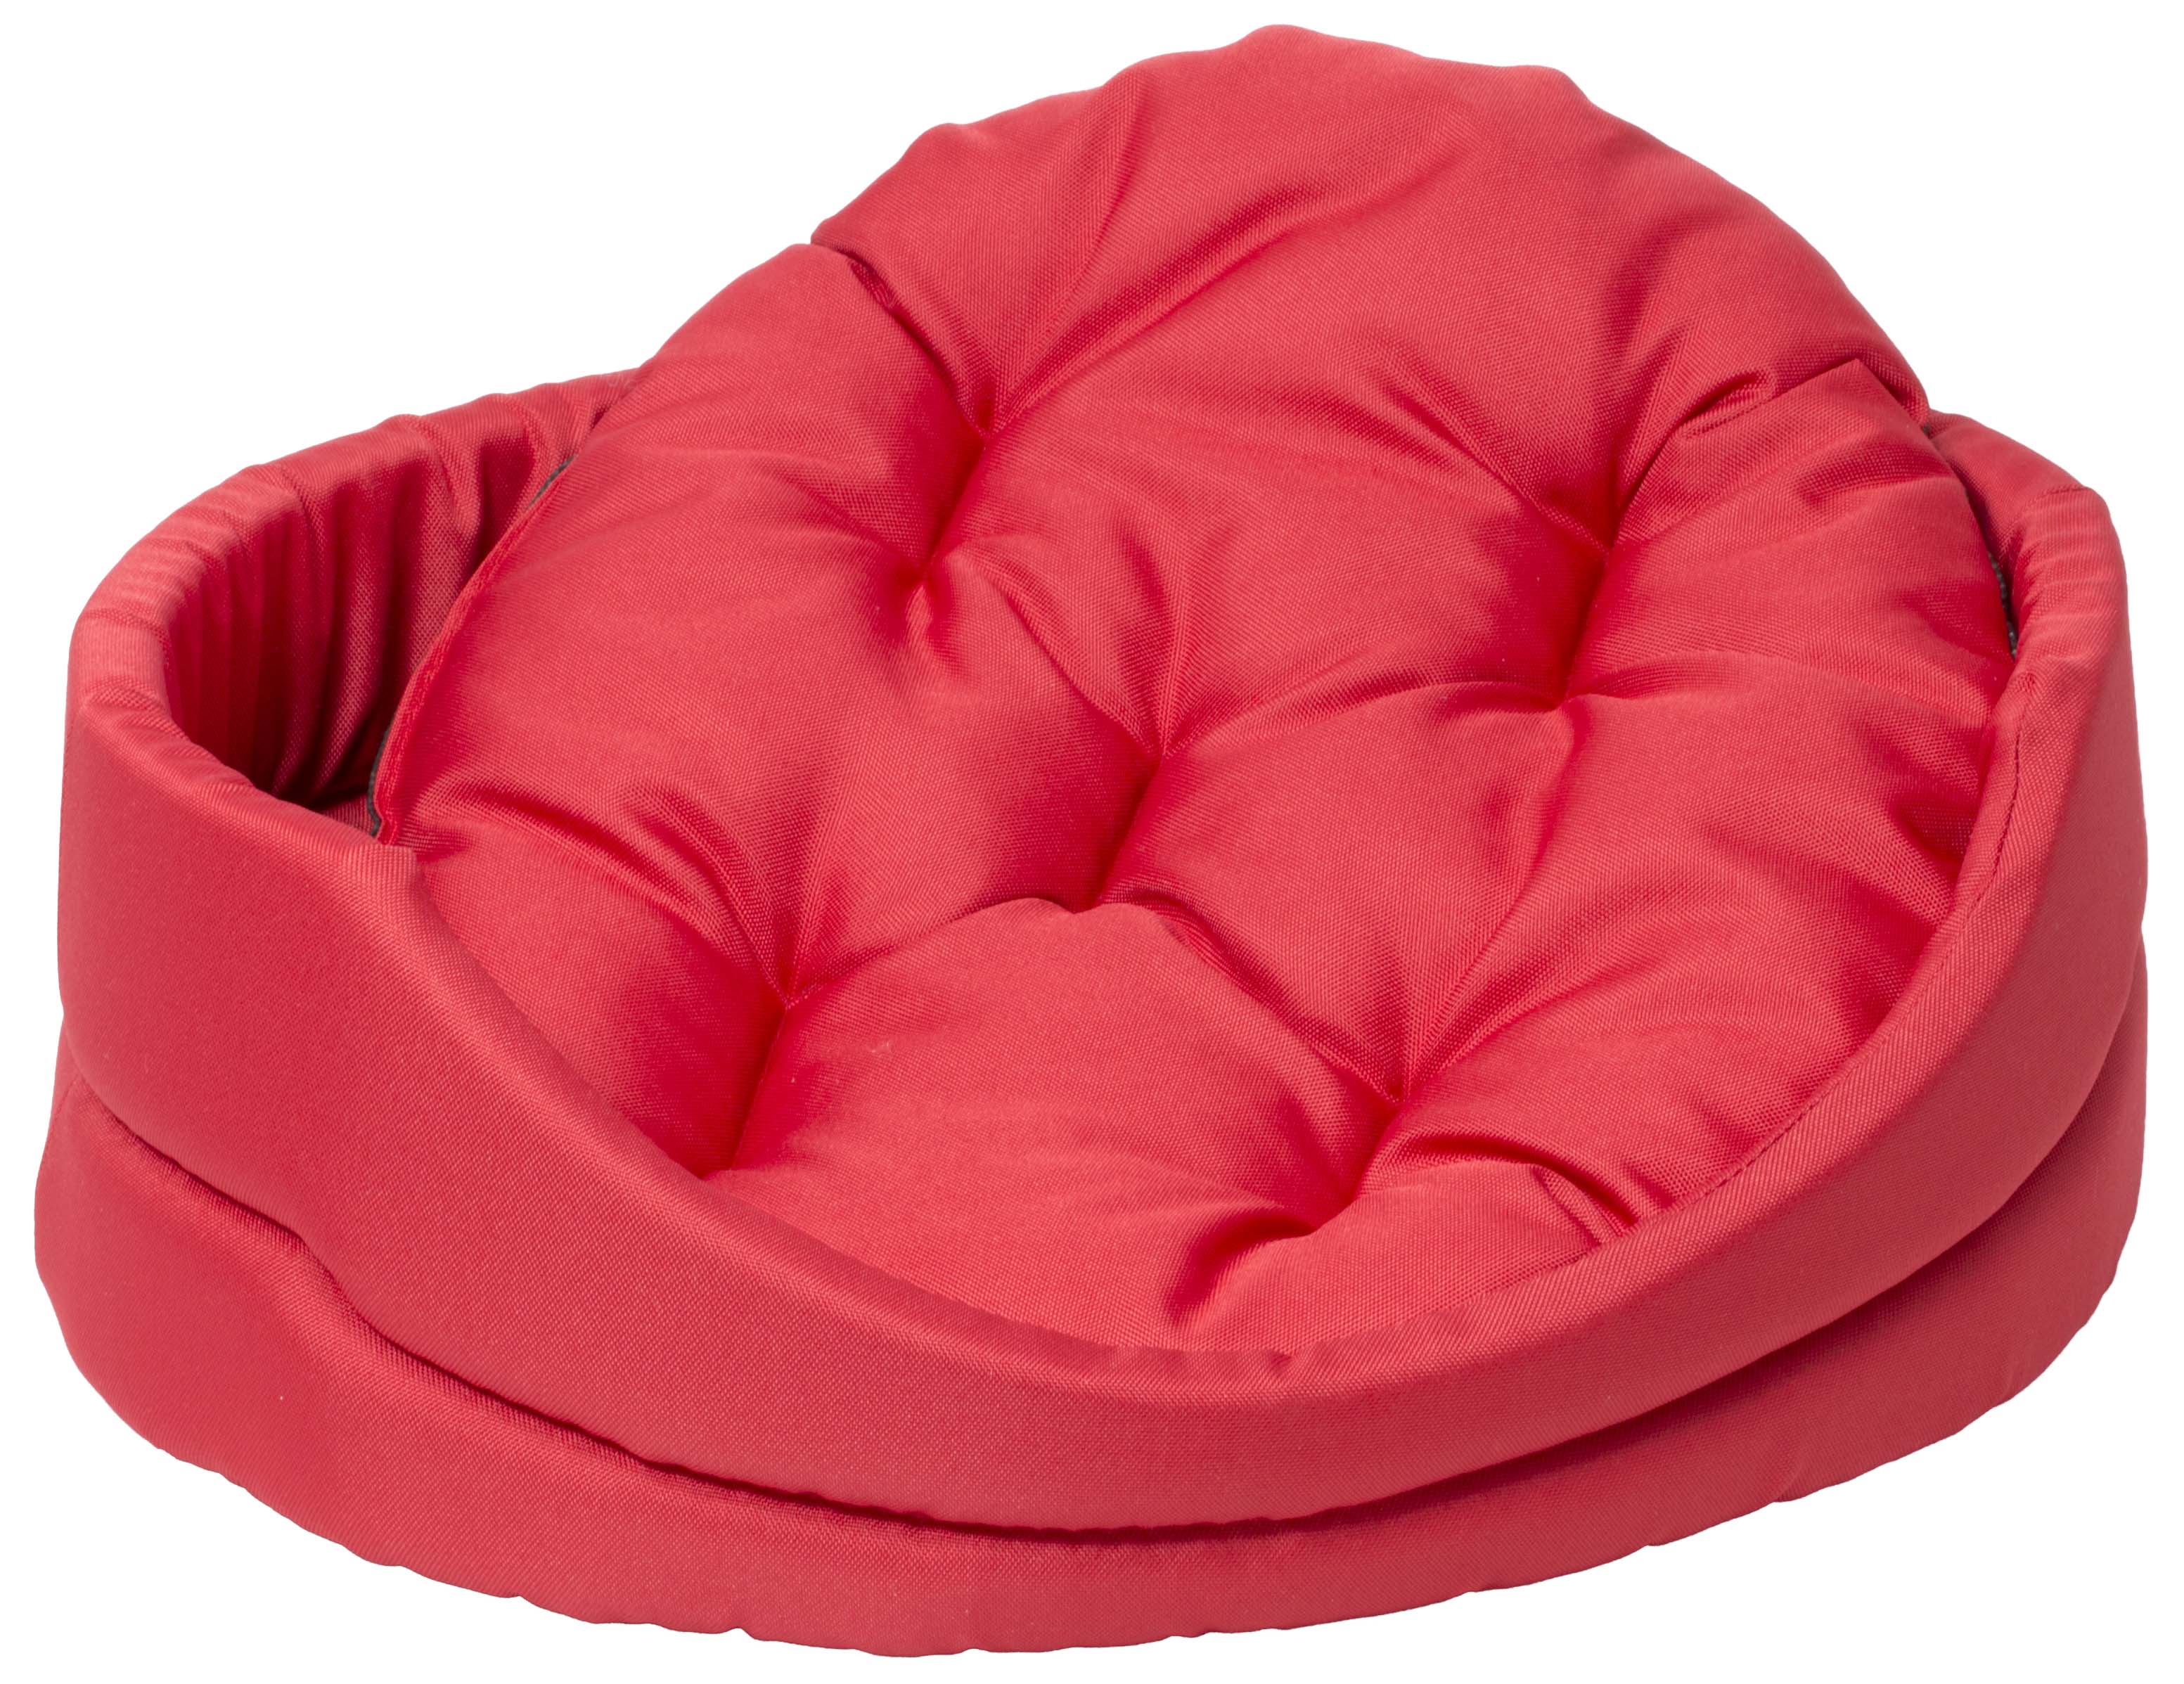 Лежанка овальная с подушкой 75*66*19 см красная, Dog Fantasy